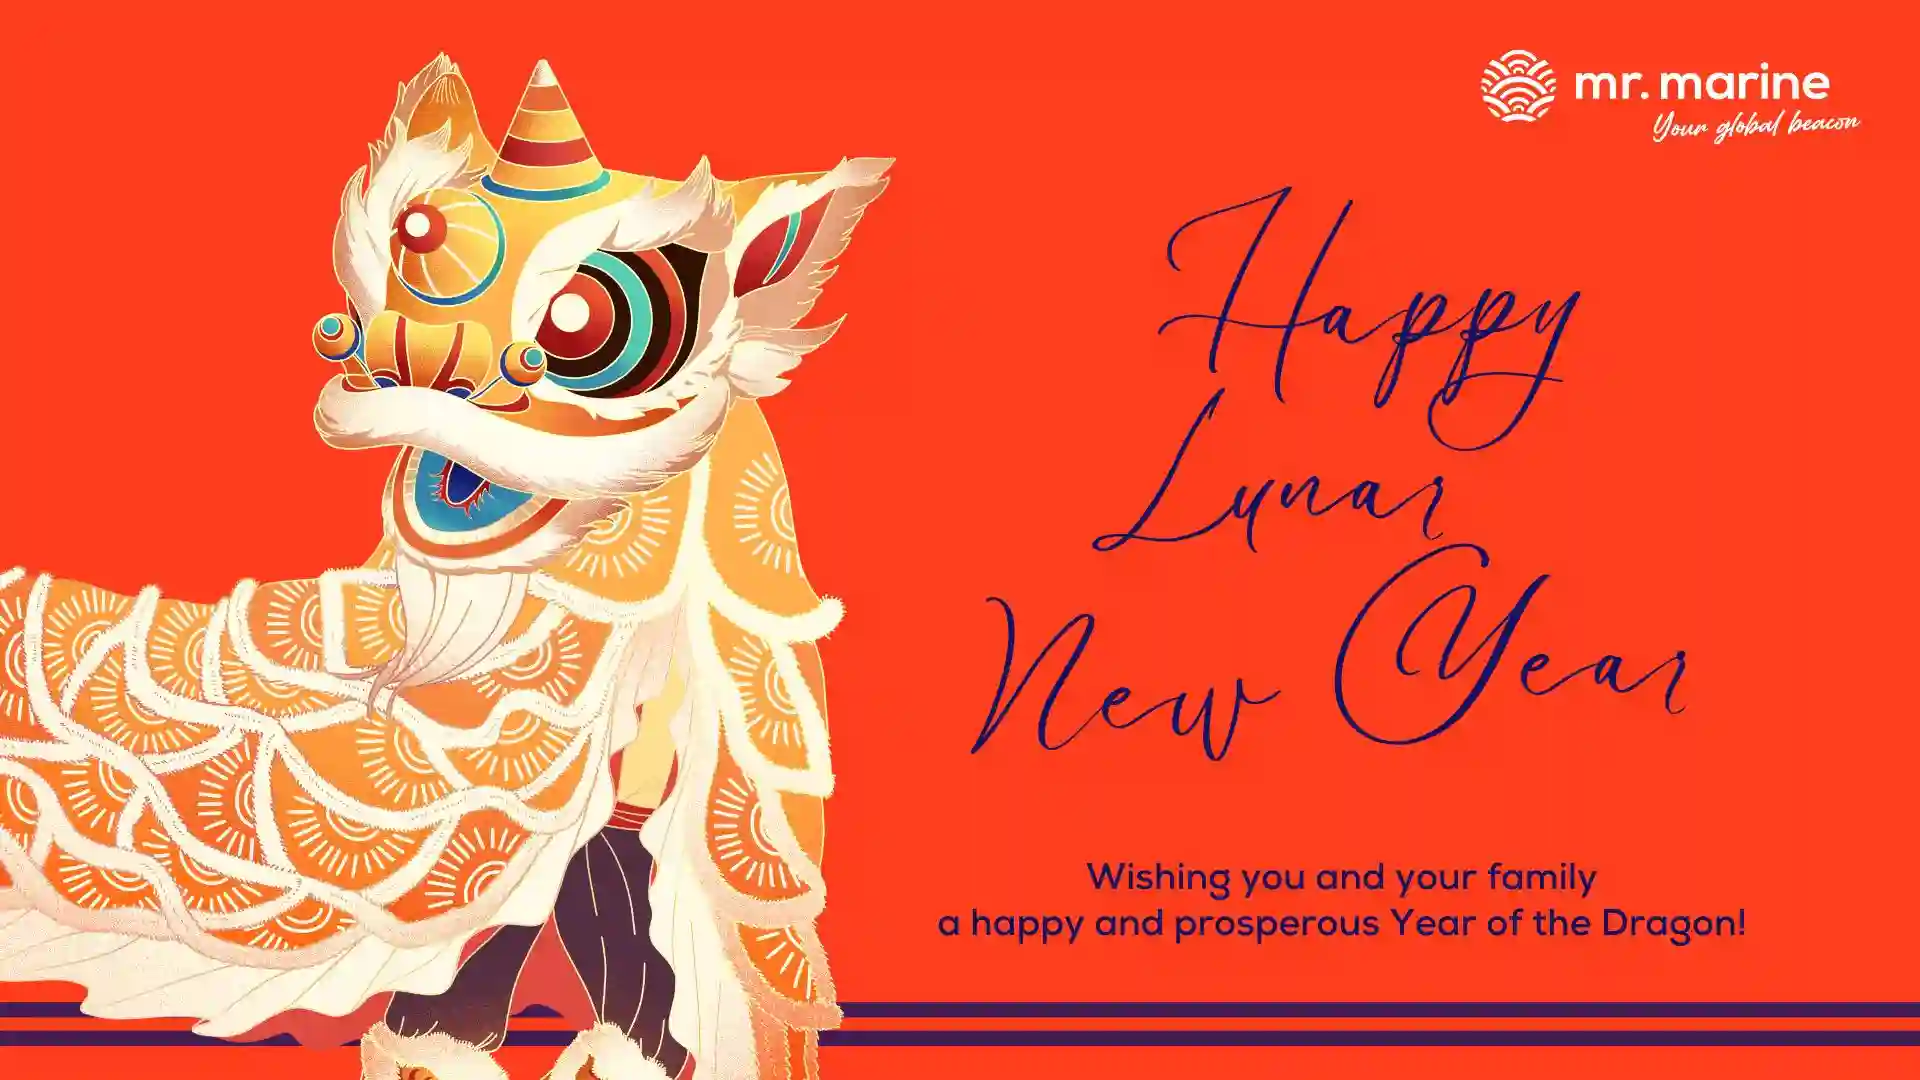 Happy Lunar New Year 2024